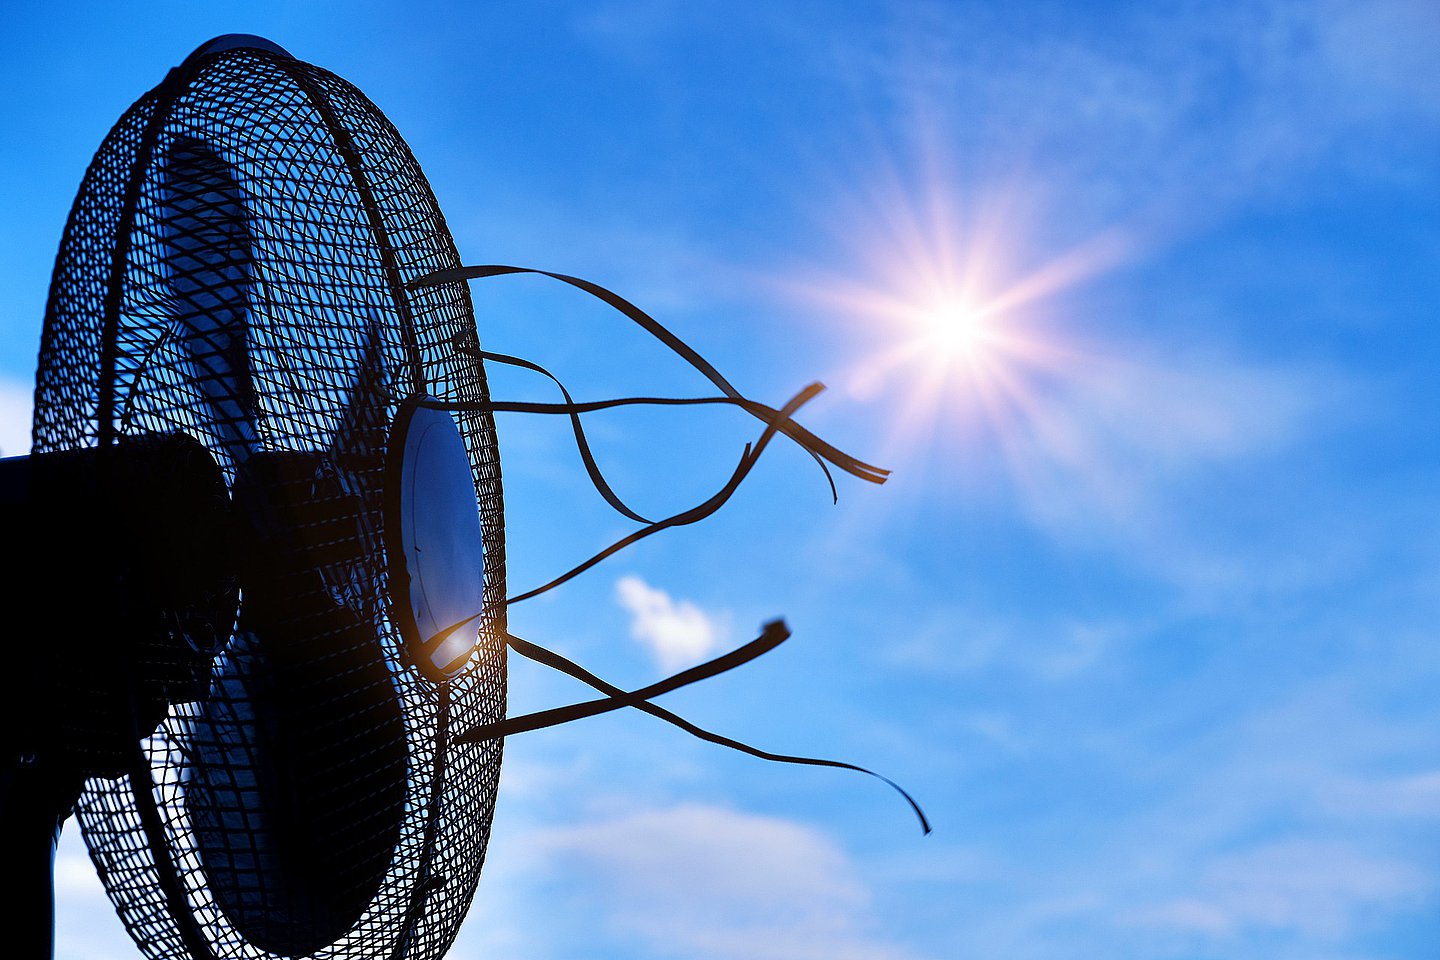 Symbolbild Hitze: Ventilator vor der Sonne am blauen Himmel